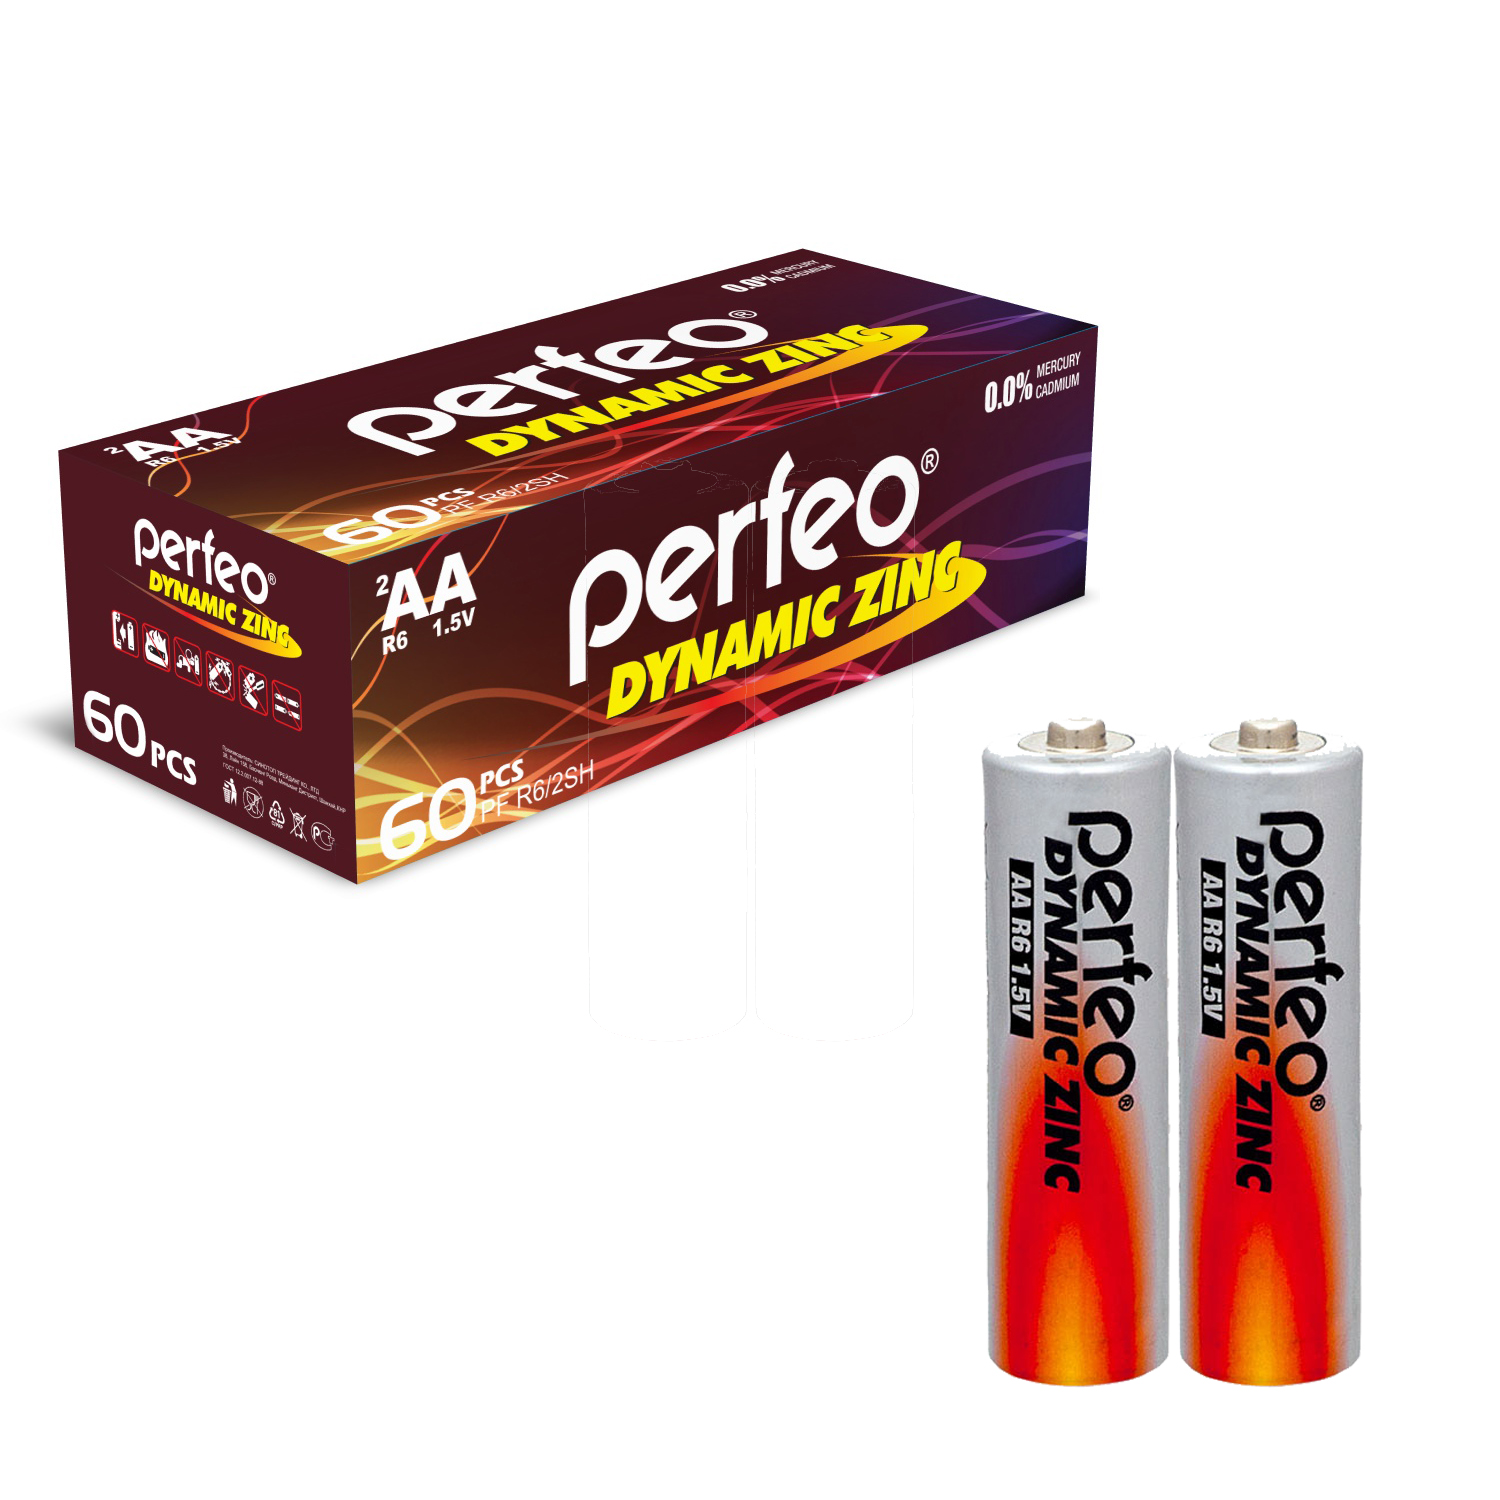 Батарейки Perfeo Dynamic Zinc AA (LR6), 60 шт, 30x2 шт батарейки perfeo super alkaline aa lr6 60 шт 30x2 шт